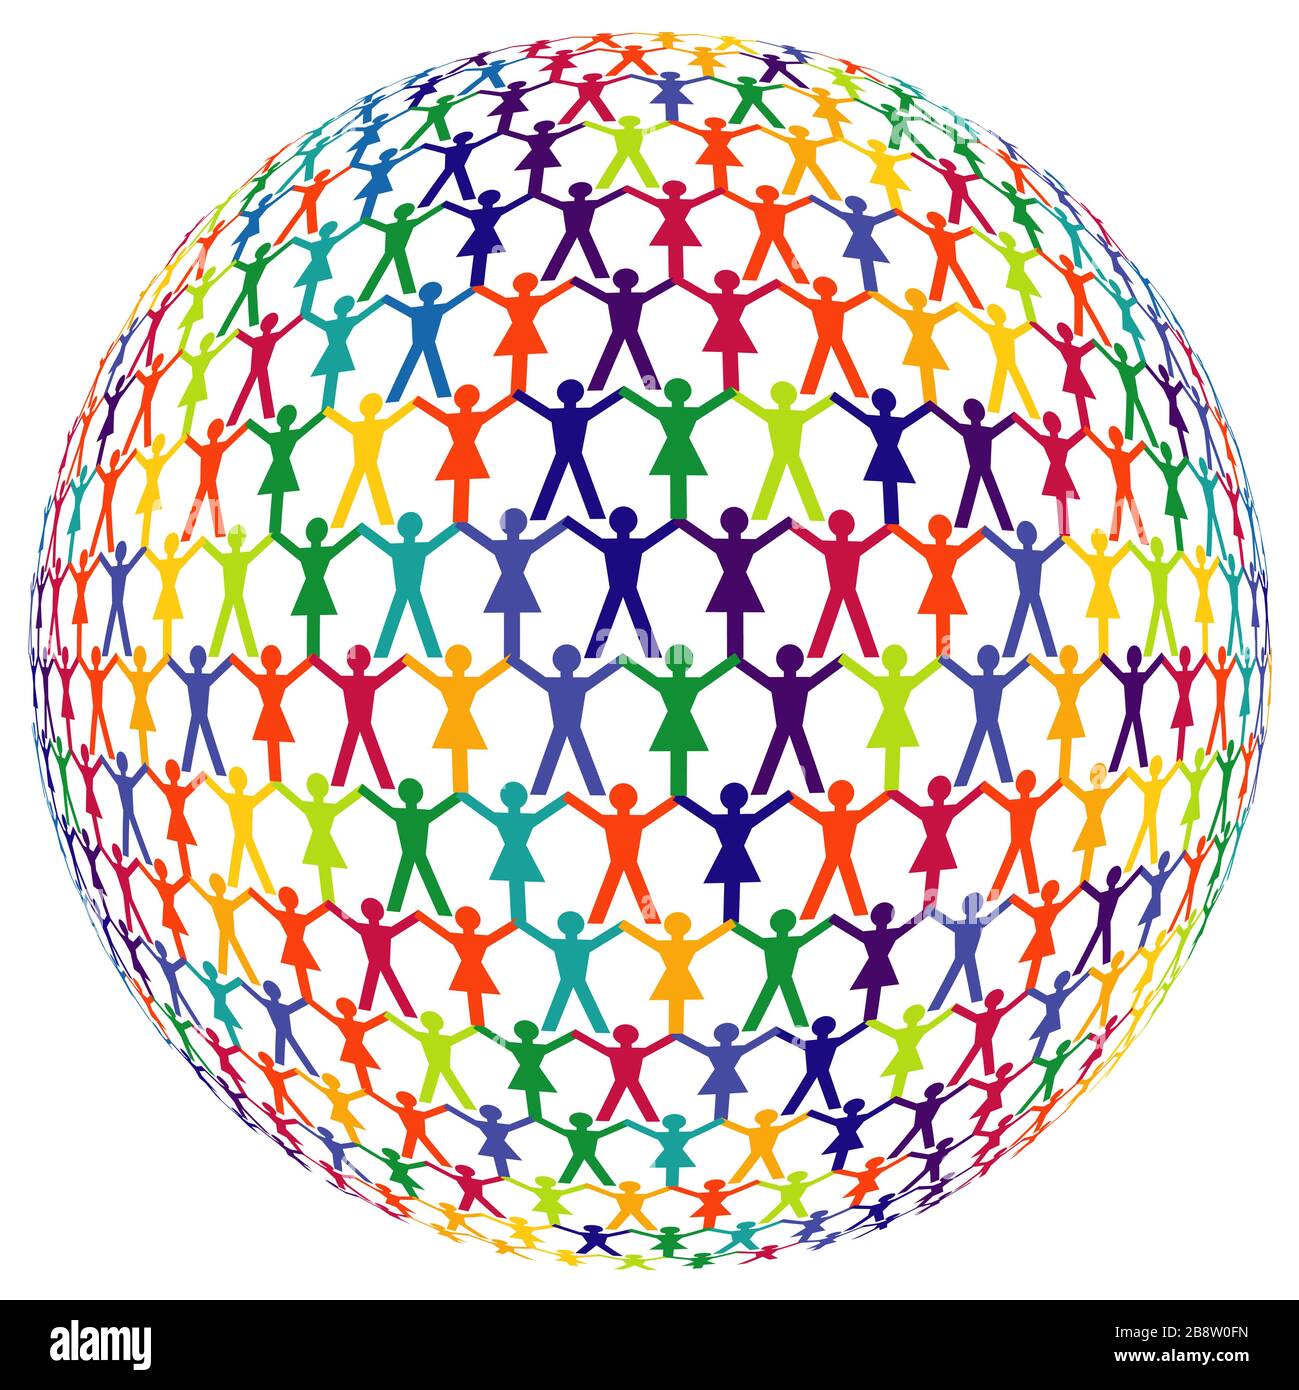 Eine Gruppe von Menschen in Form eines Globus, isoliert auf weißem Hintergrund. - Vektorgrafiken Stock Vektor